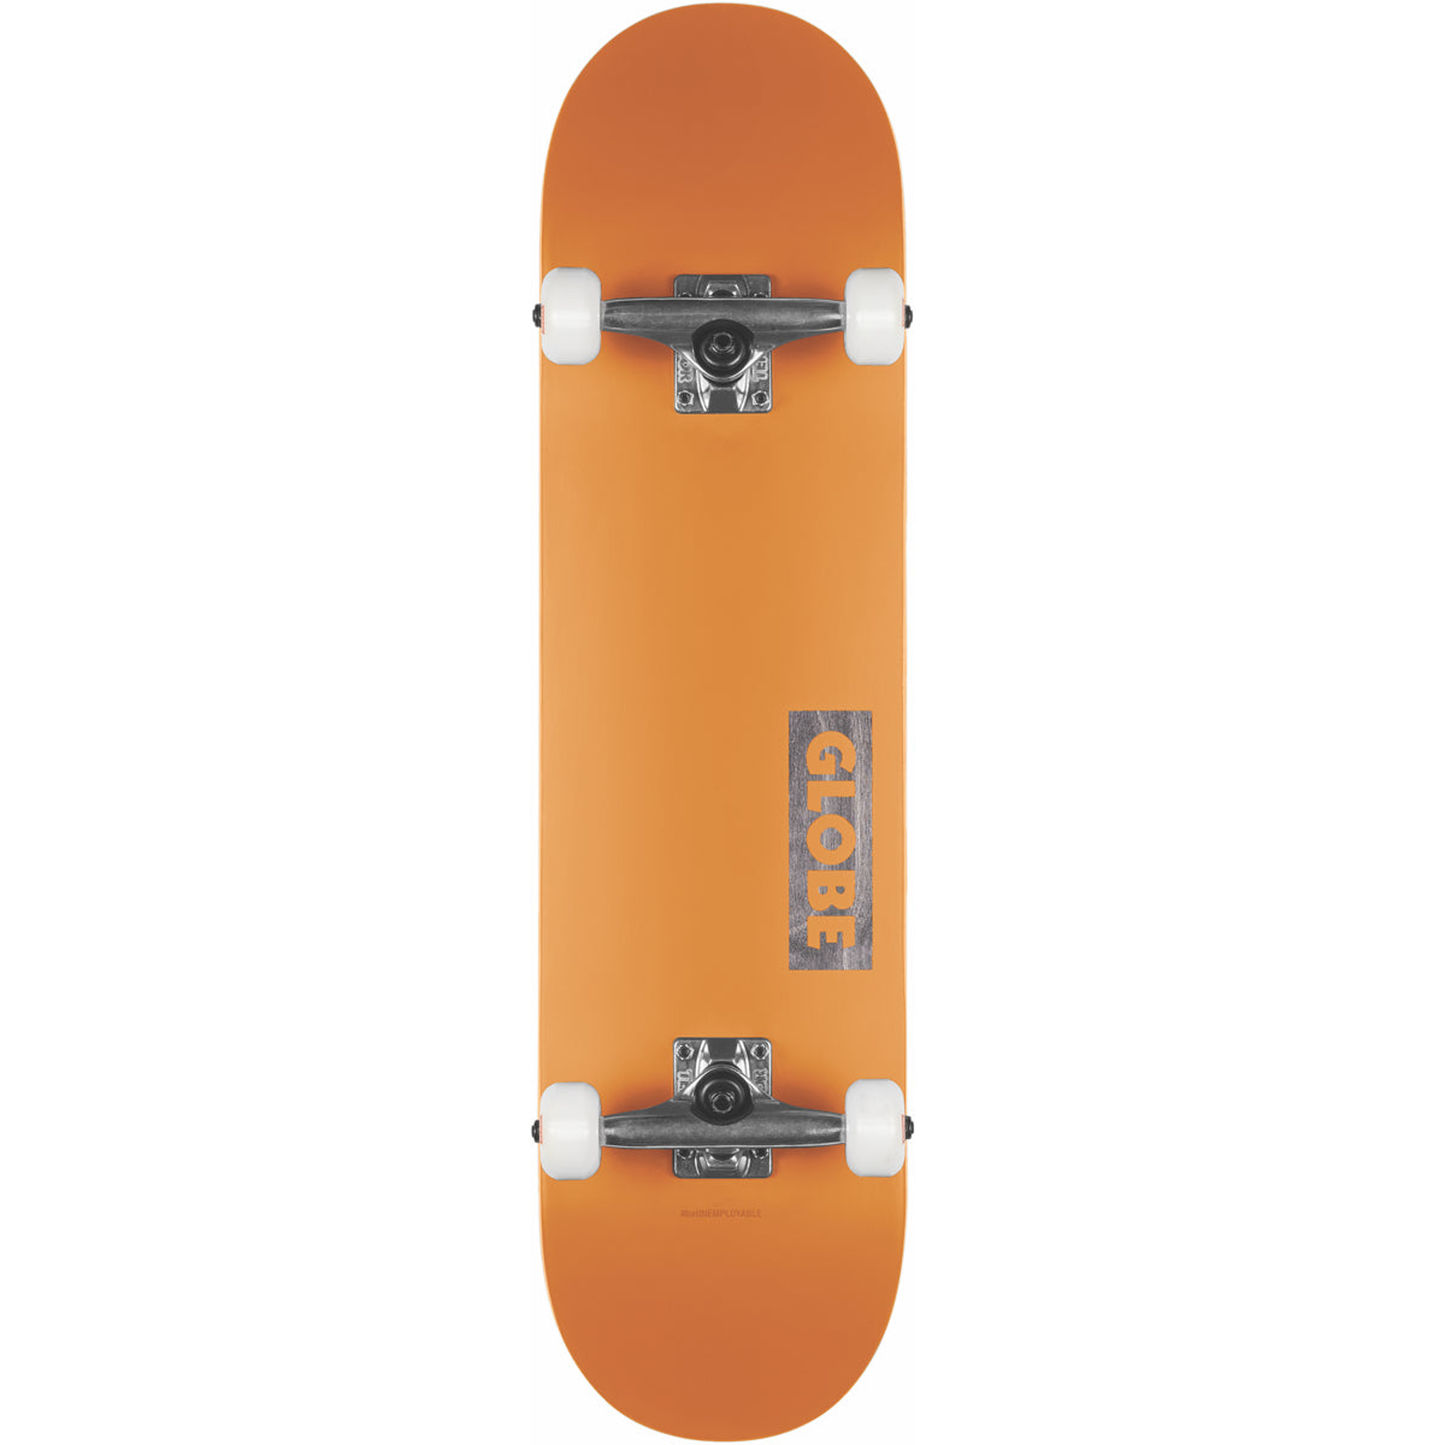 Globe Goodstock pre-built skateboard, 8.125" in the colour neon orange. 